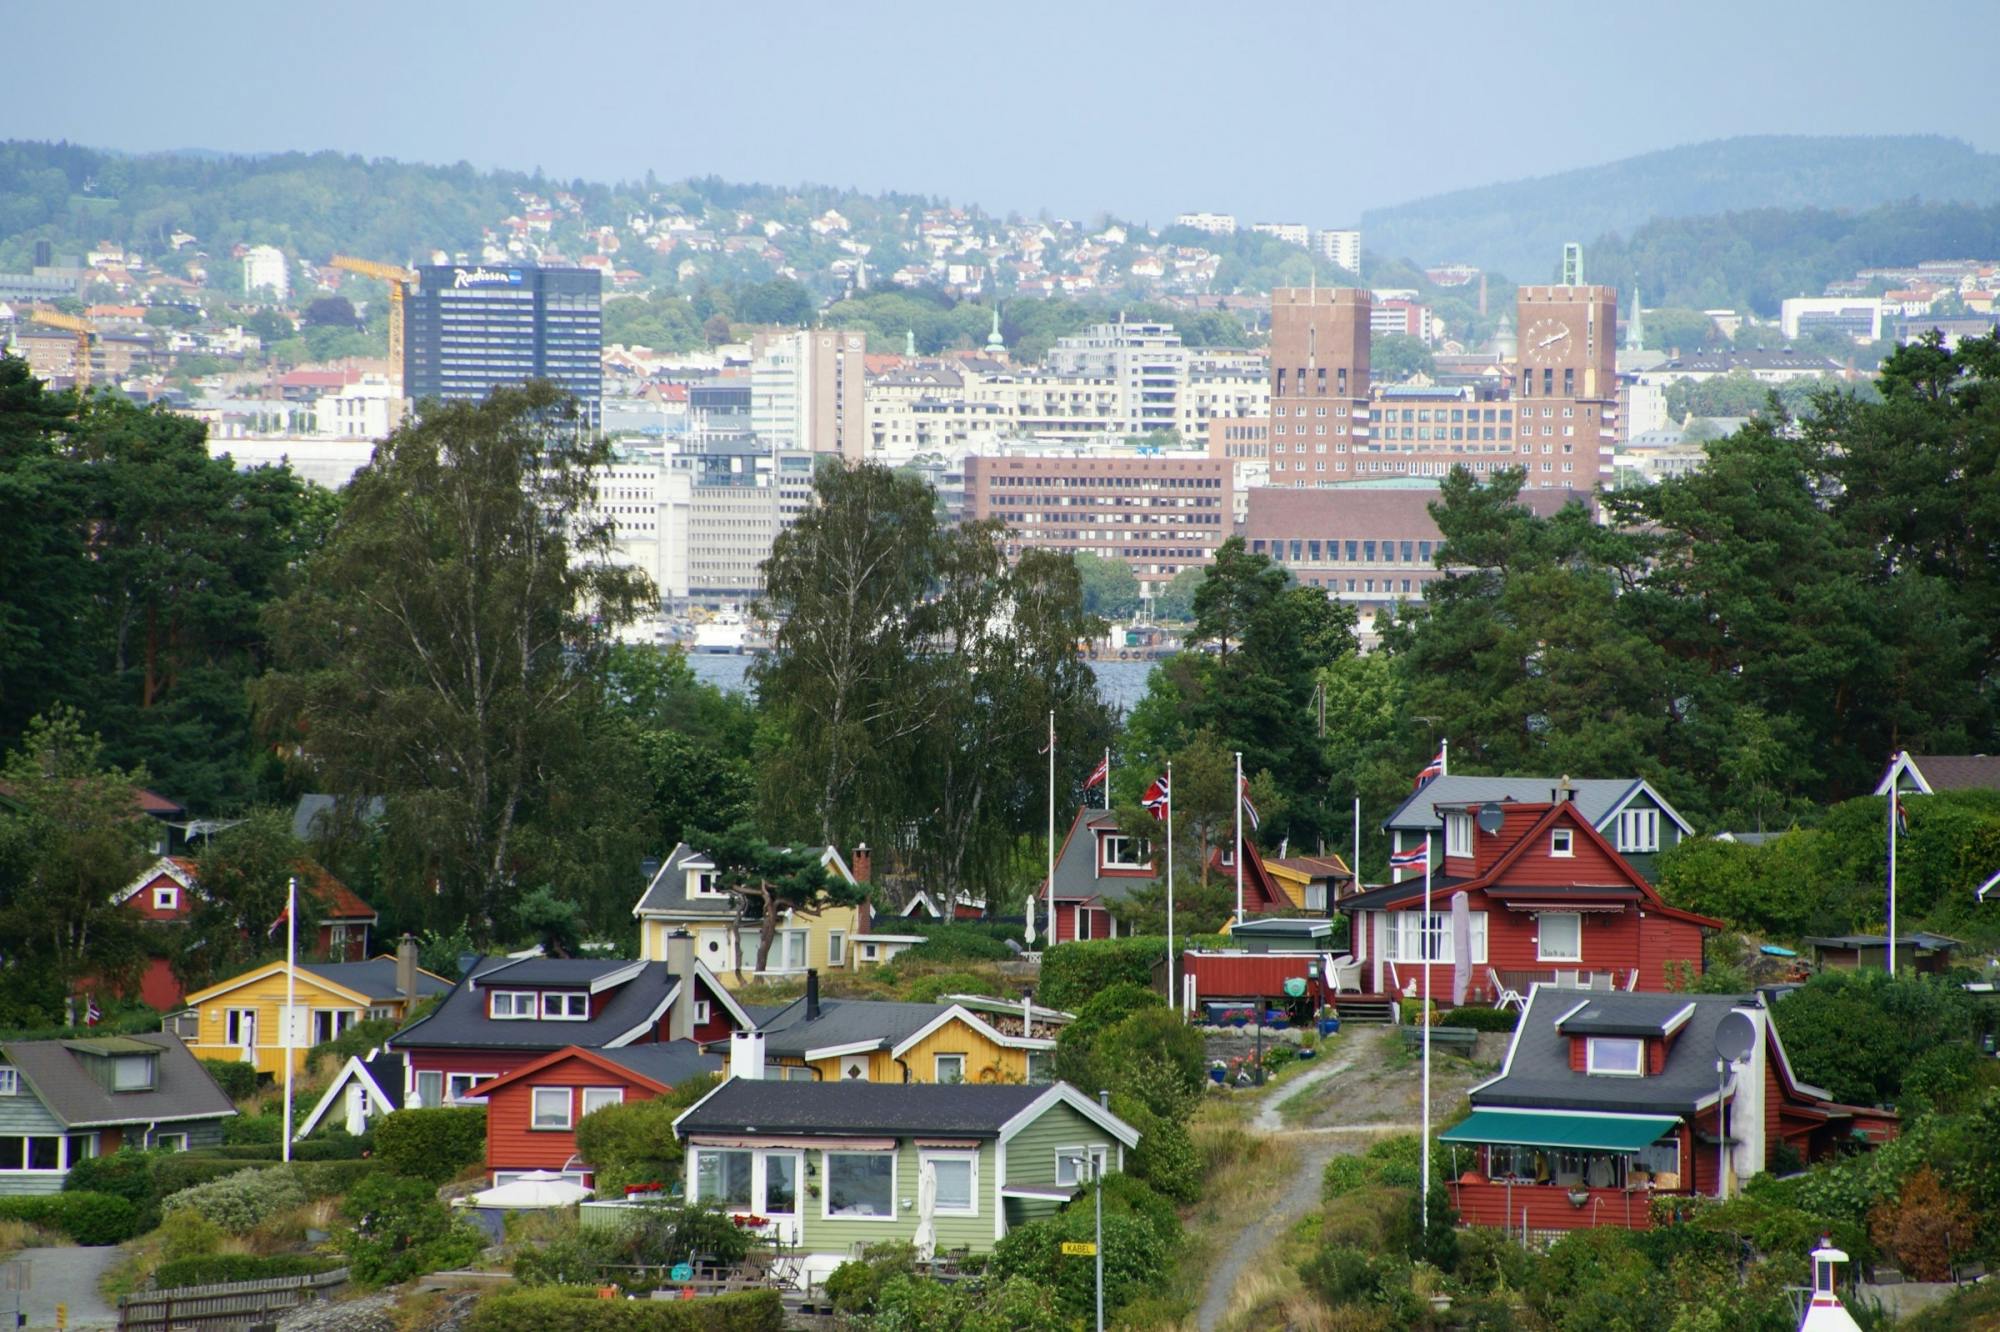 Eilandhoppen door de Oslofjord